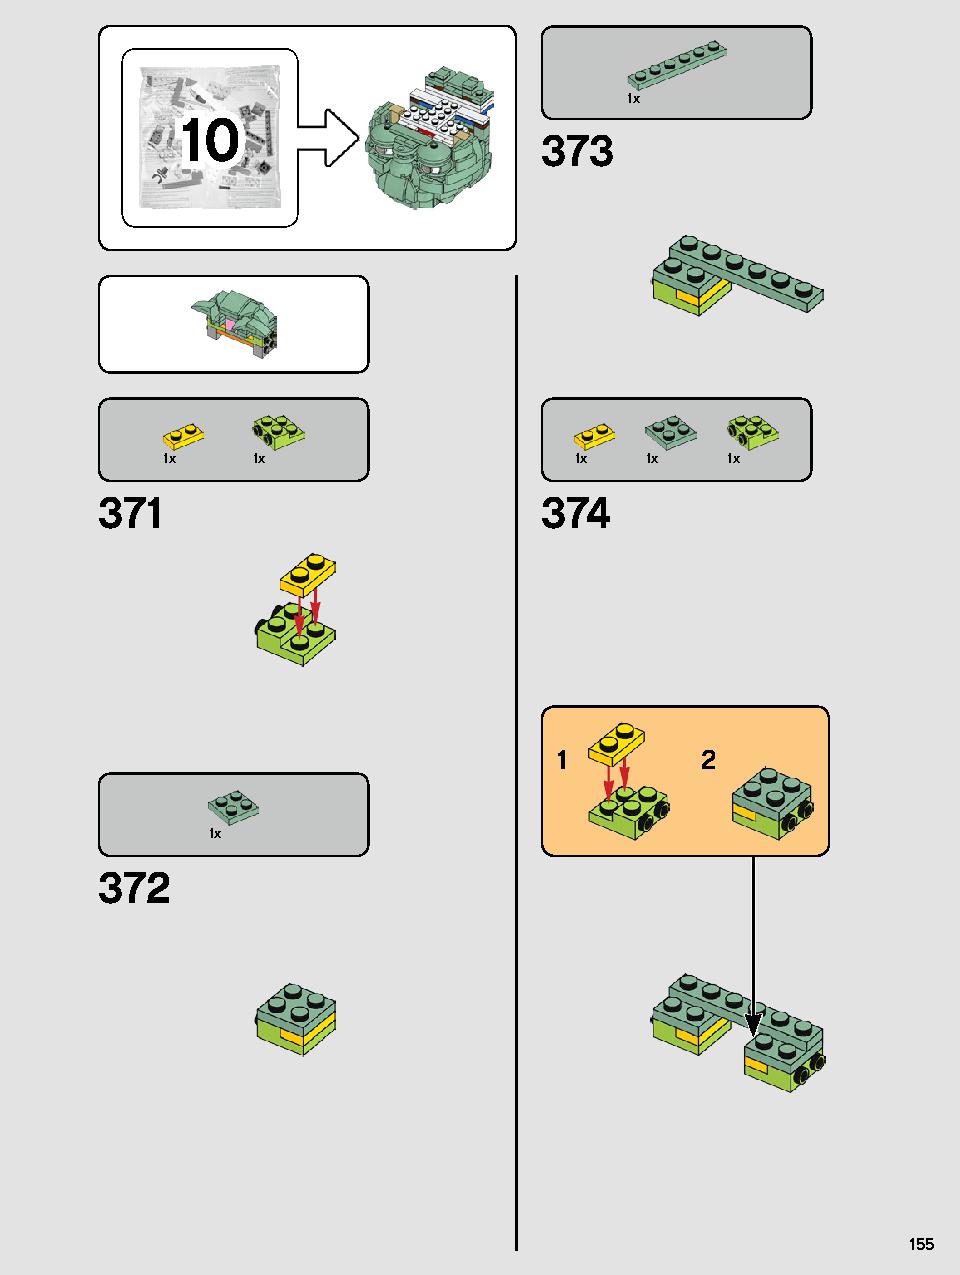 ヨーダ™ 75255 レゴの商品情報 レゴの説明書・組立方法 155 page